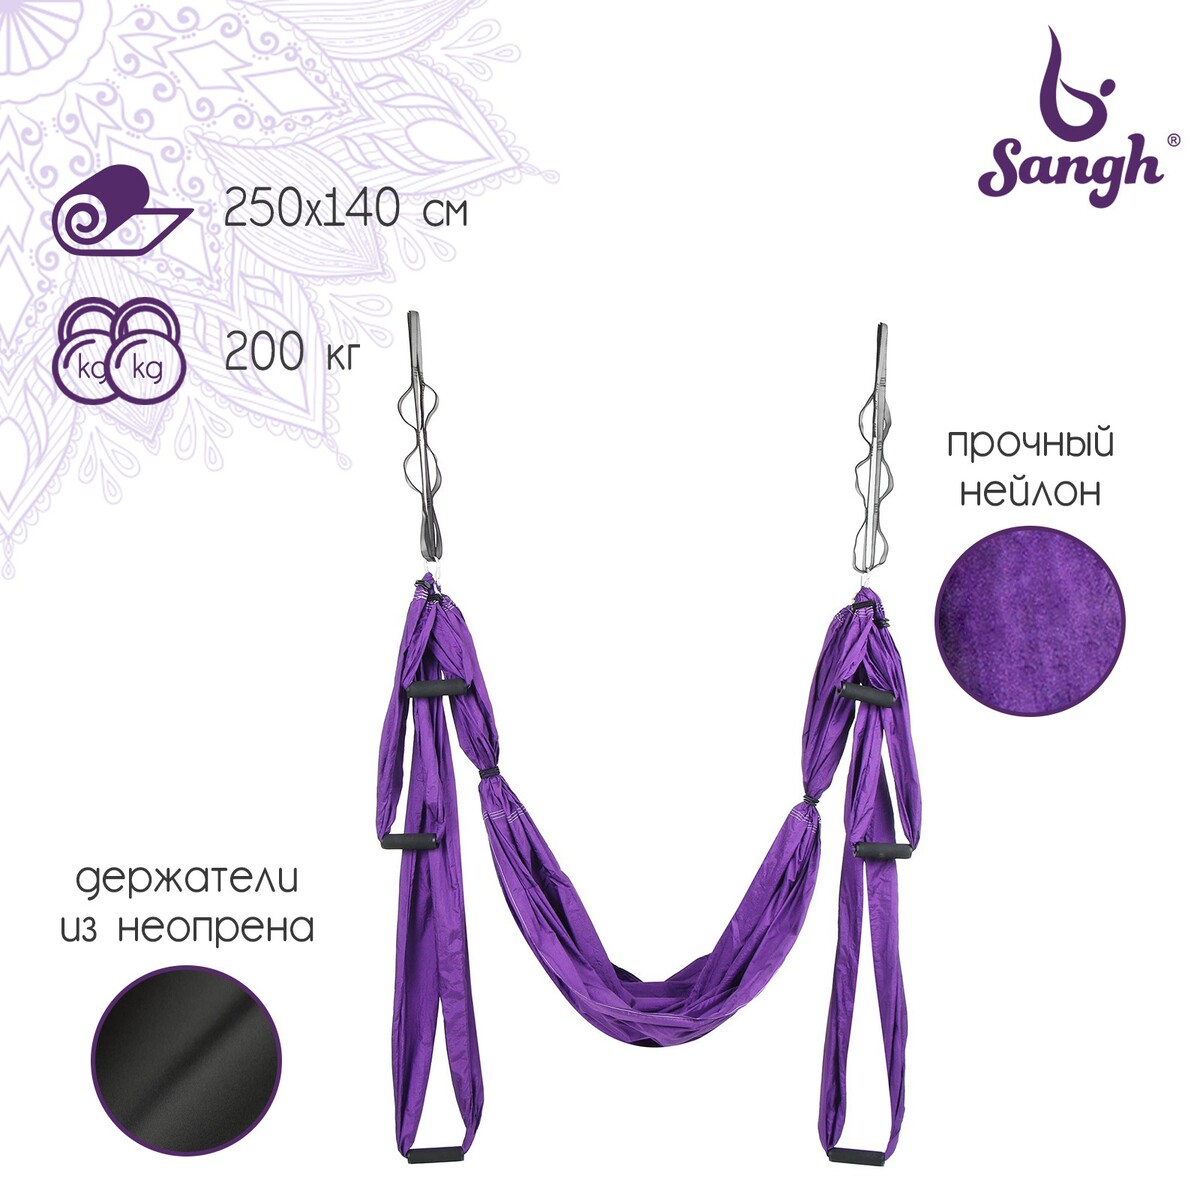 Гамак для йоги sangh, 250×140 см, цвет фиолетовый капризун кресло гамак 130х100 см